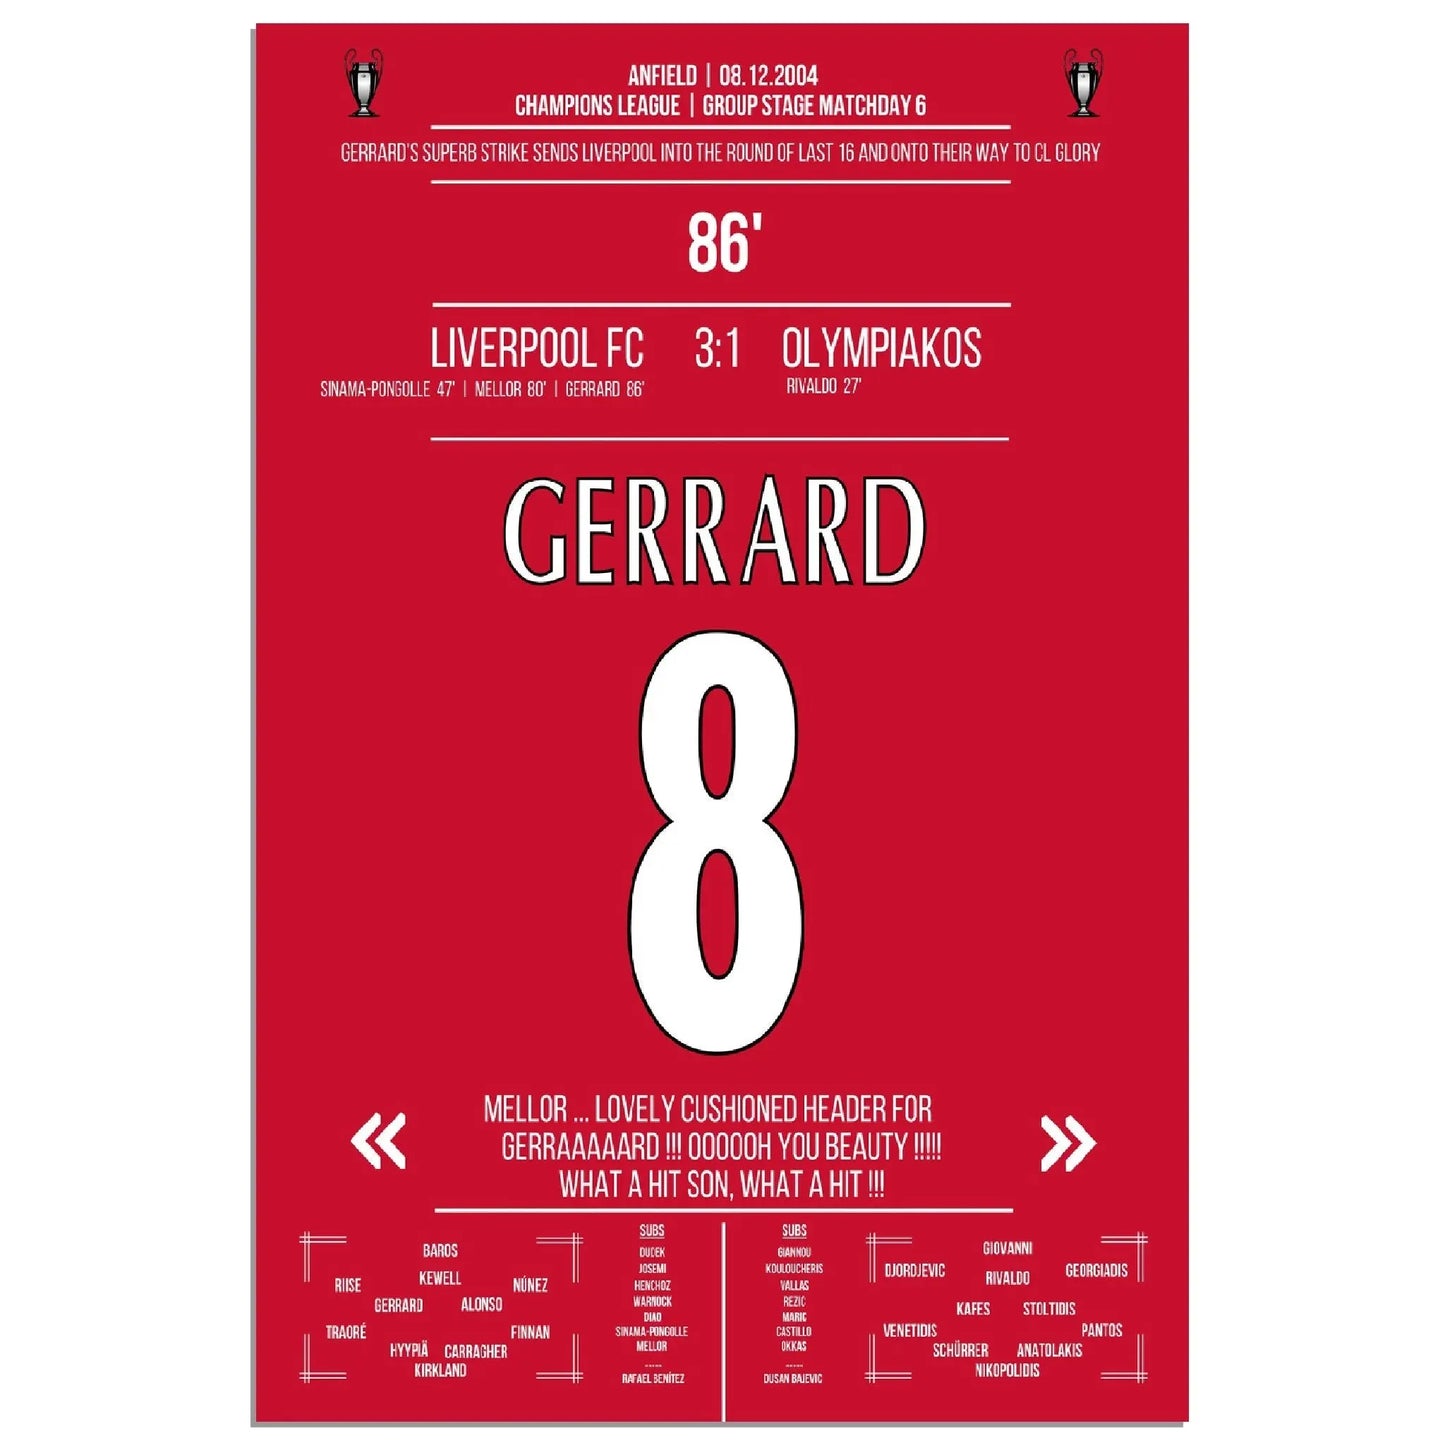 Steven Gerrard's Strike gegen Olympiacos 2004/05 